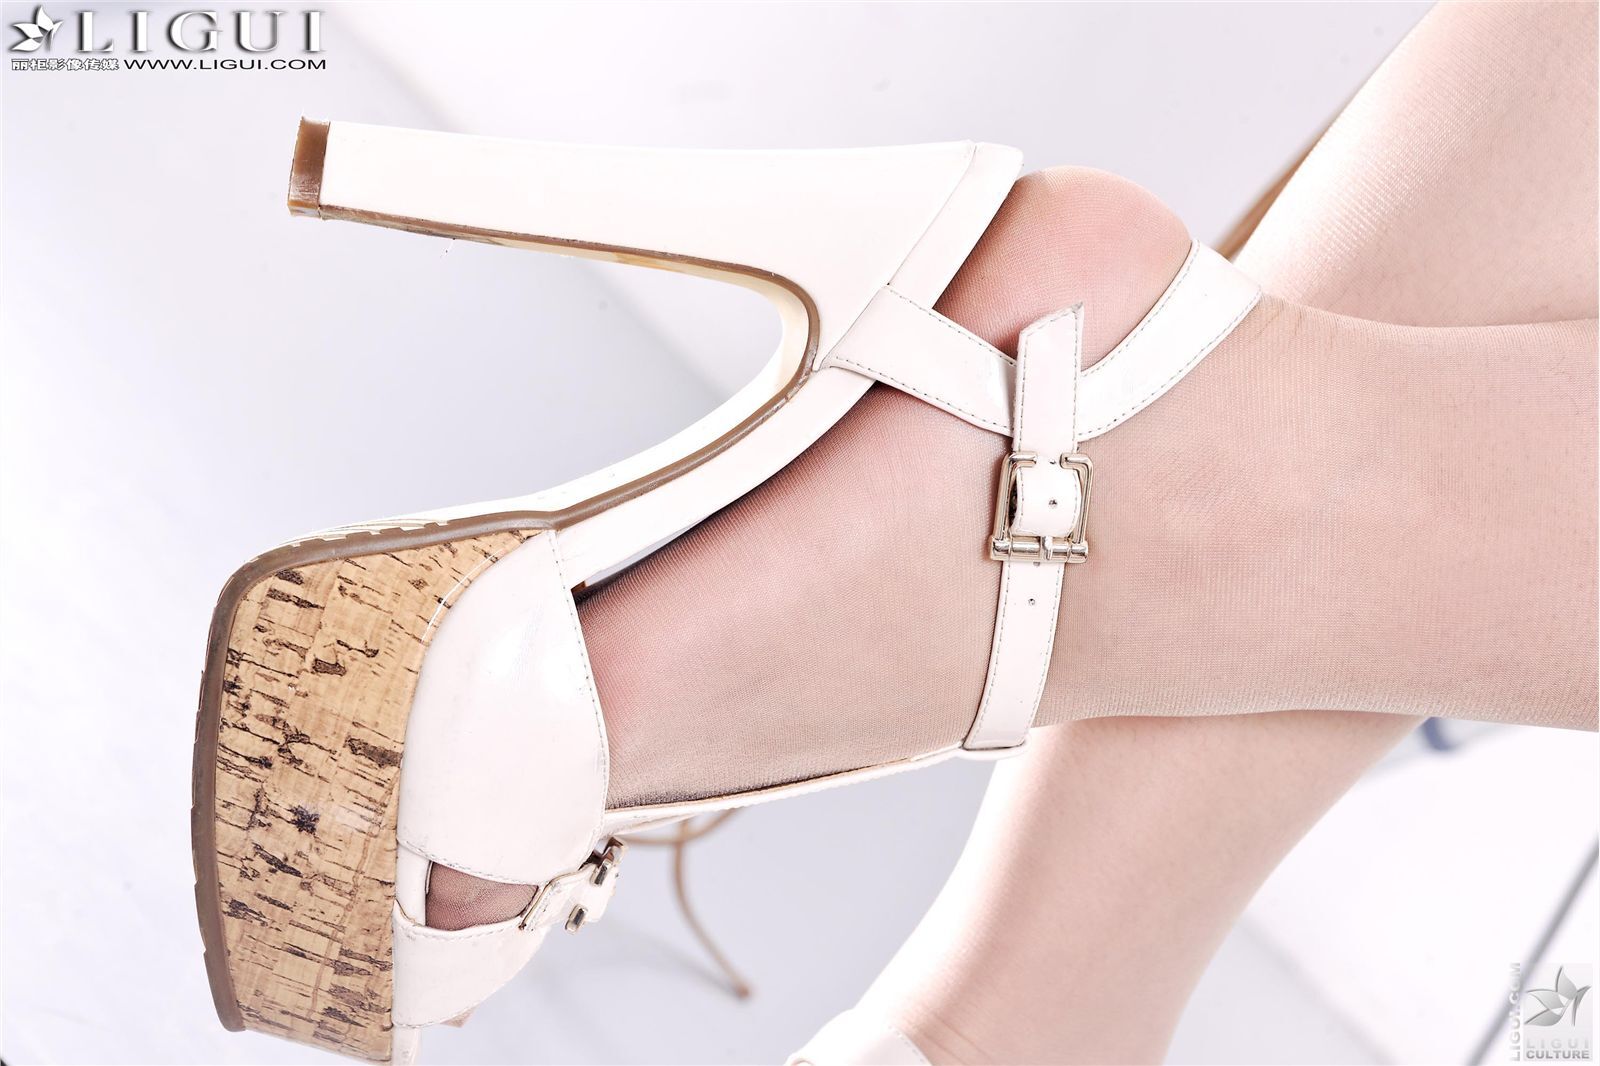 [Li cabinet] 2013.03.17 network beauty model Yuner stockings high heel